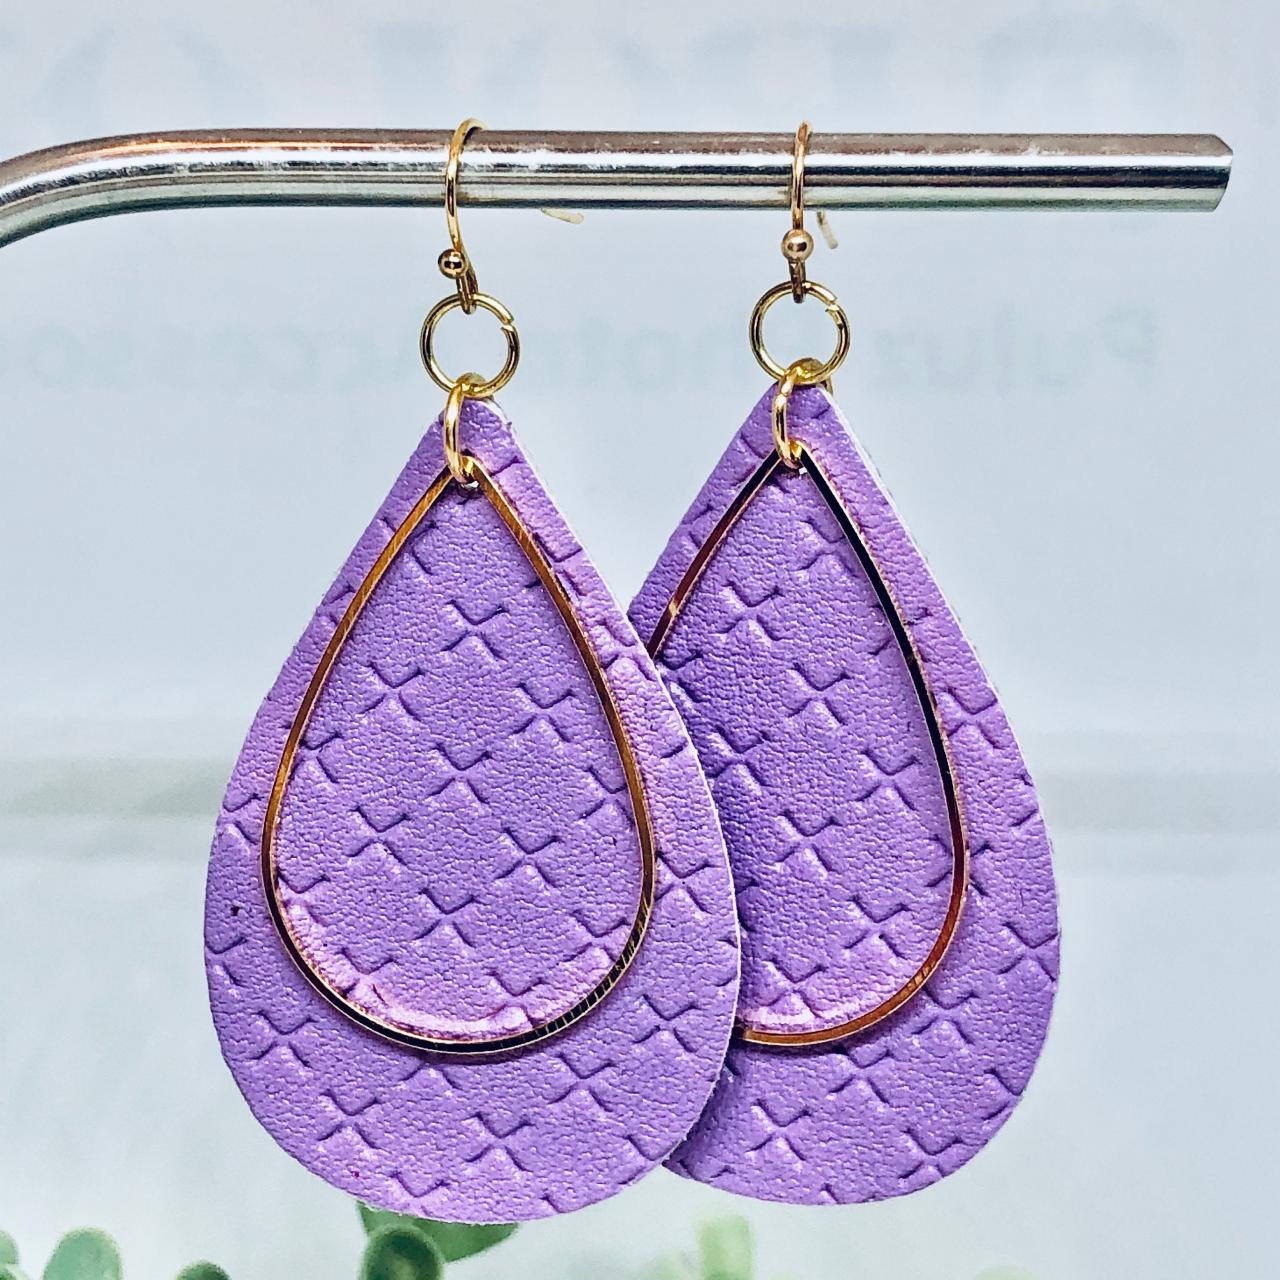 Purple Textured Faux Leather Earrings, Teardrop Earrings, Double-sided Earrings, Gold Teardrop Charm, Dangle Earrings